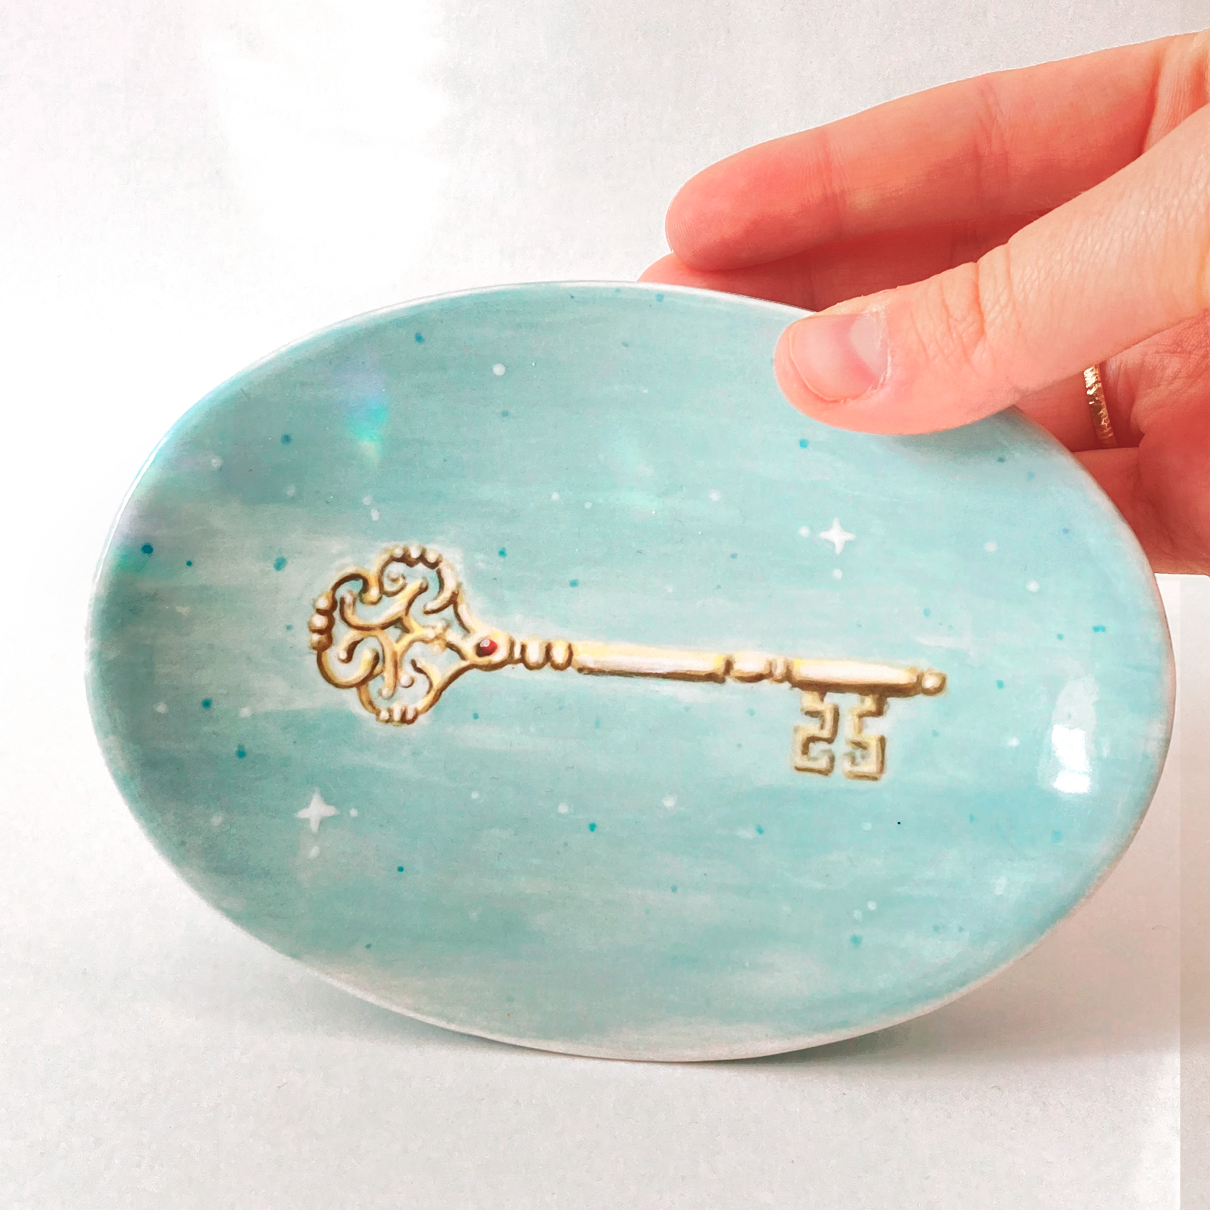 jabonera de cerámica Carillustration pintada a mano con diseño de llave